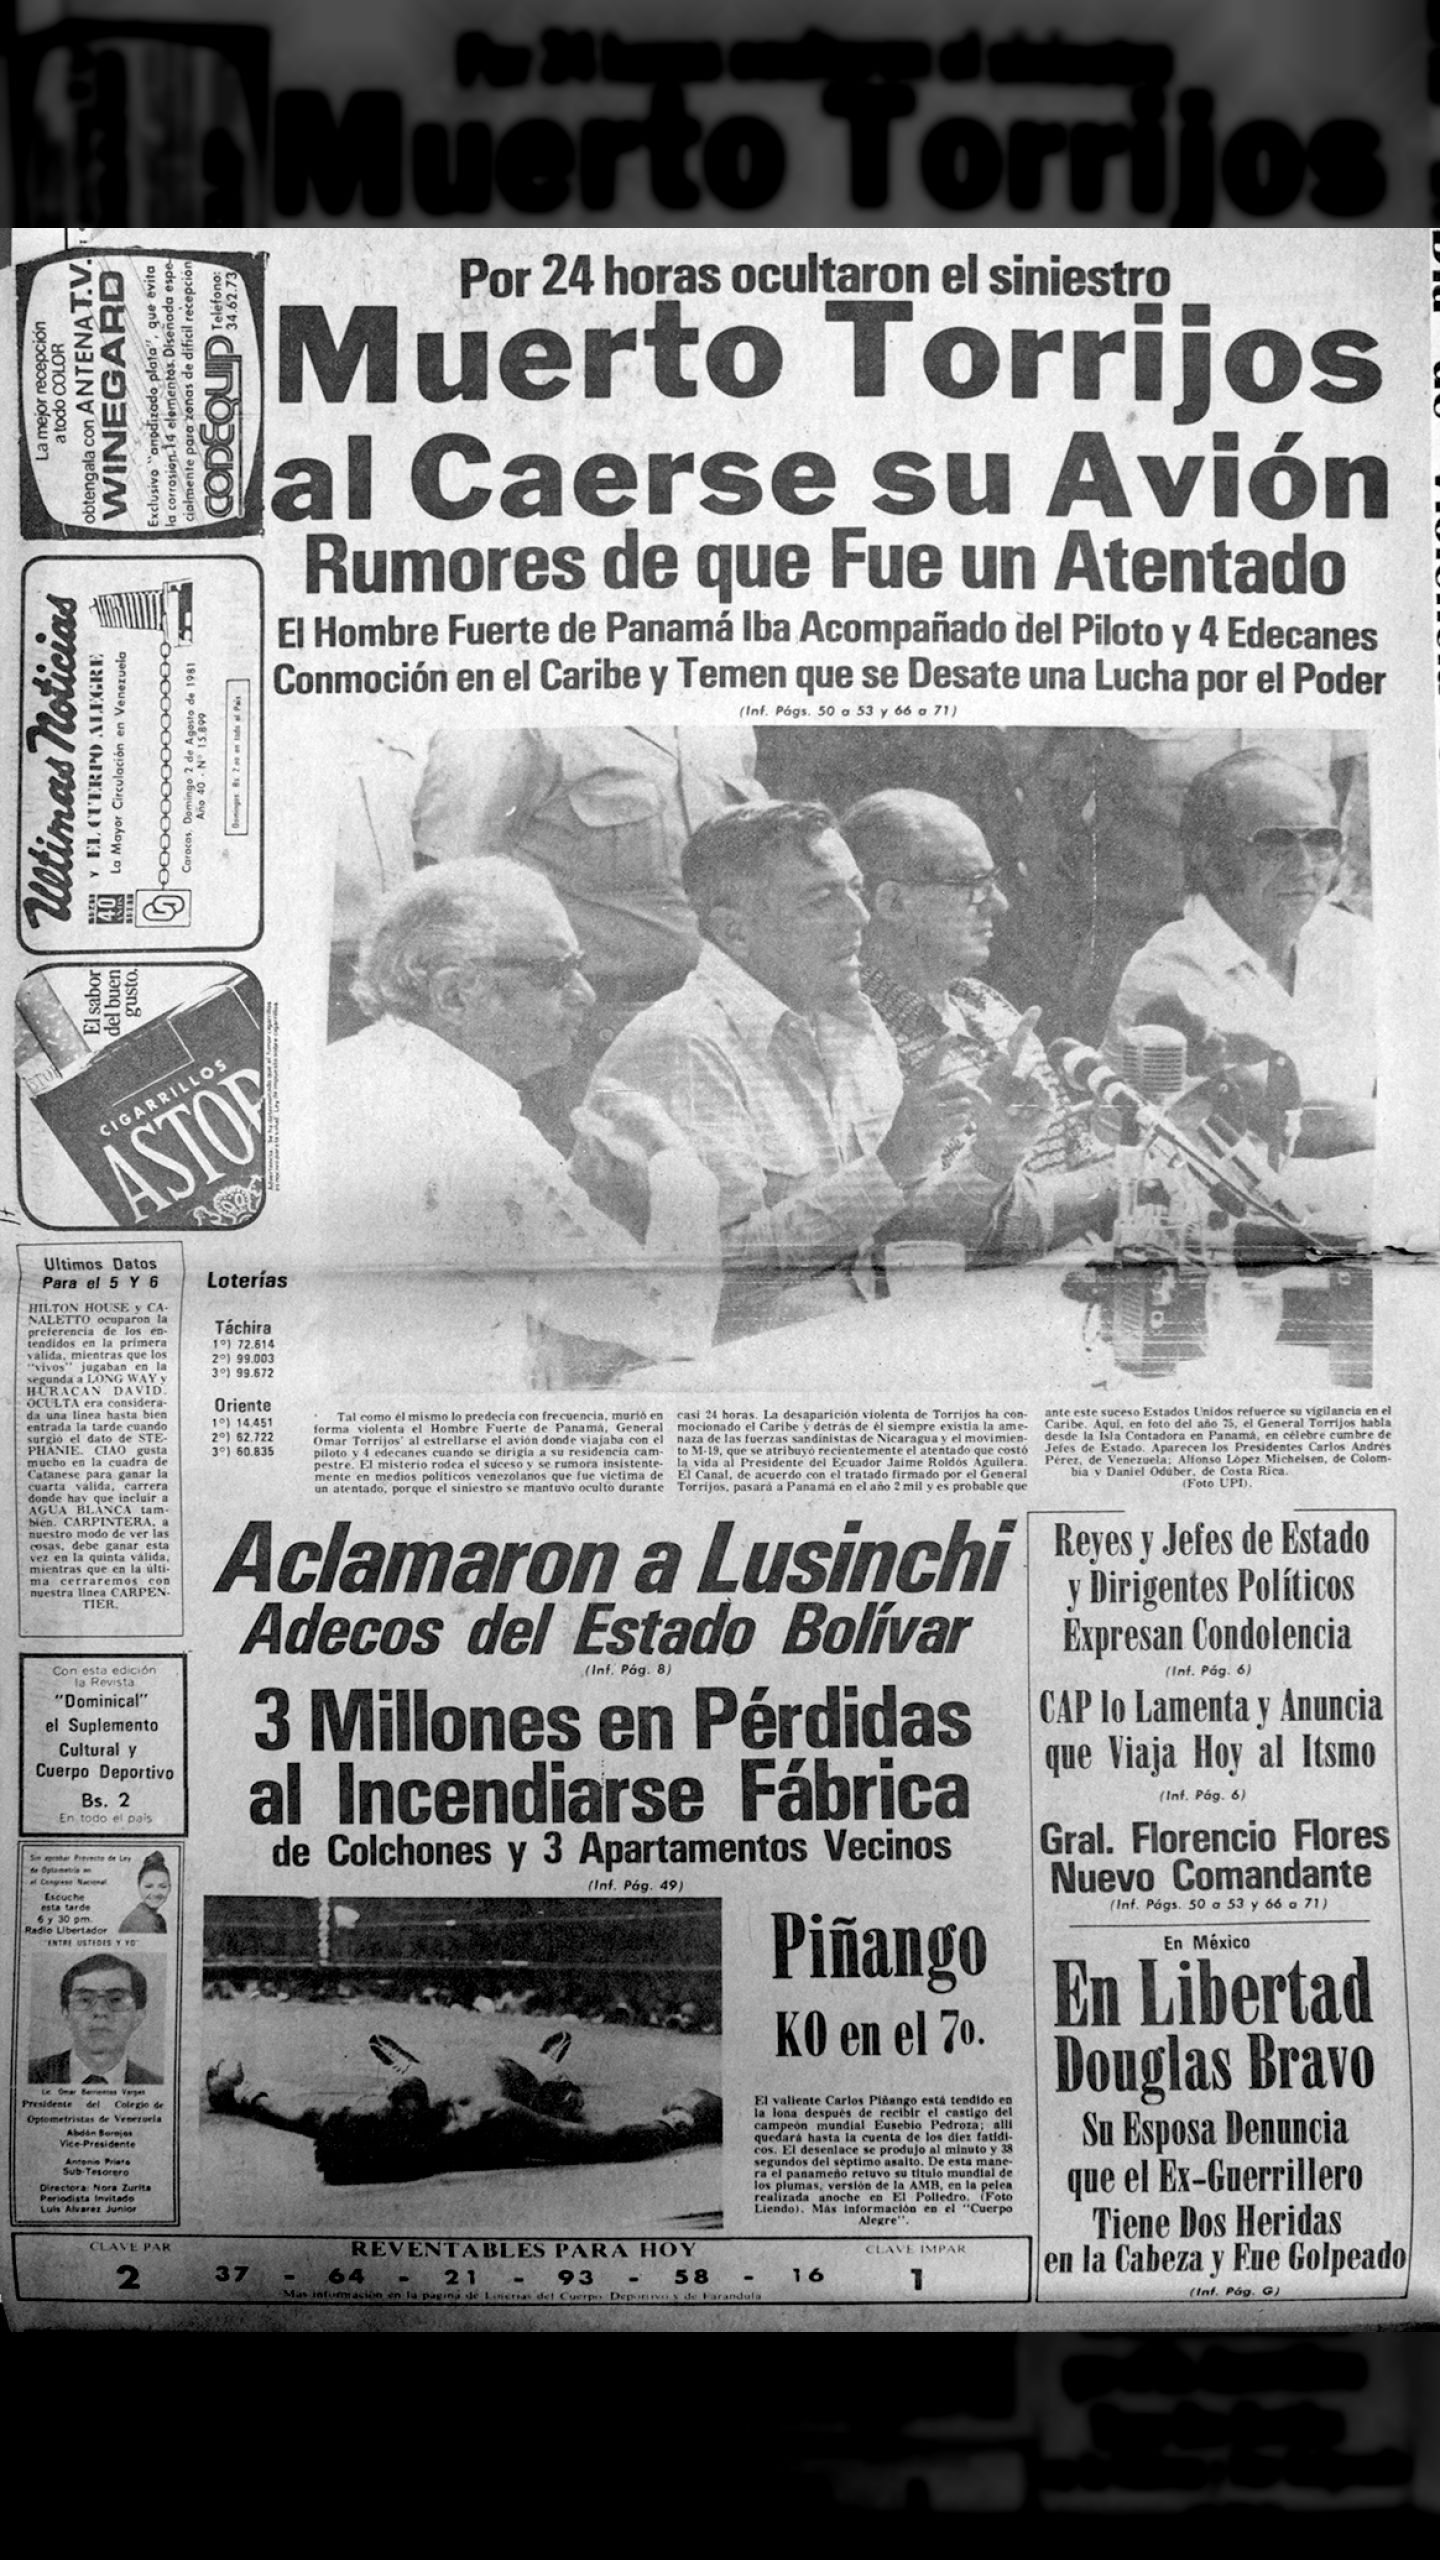 Muerto Torrijos al caerse su avión, por 24 horas ocultaron el siniestro (Últimas Noticias, 01 de agosto de 1981)